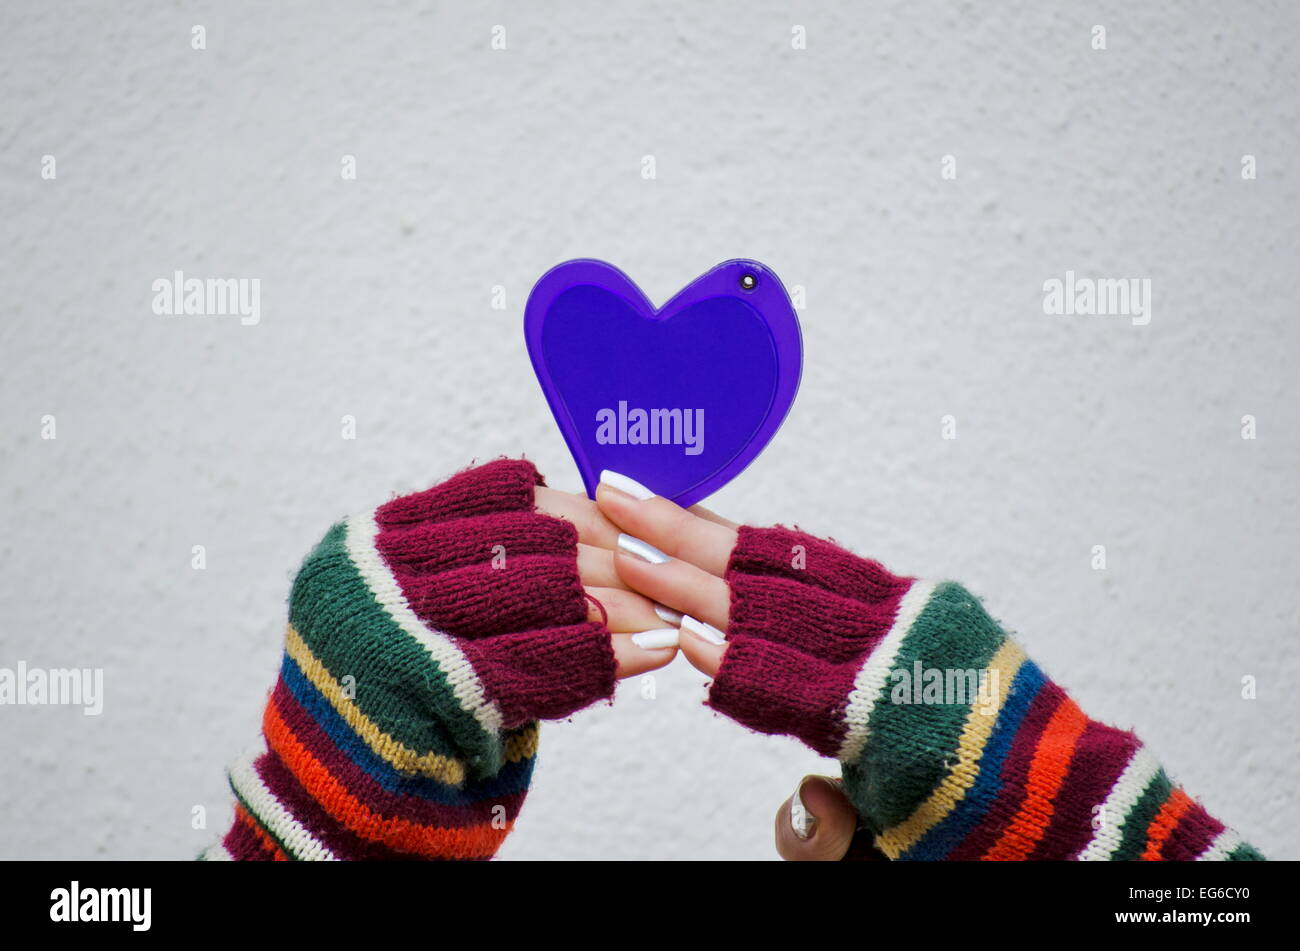 Ragazza in colorate muffole tenendo un cuore viola contro un muro bianco Foto Stock